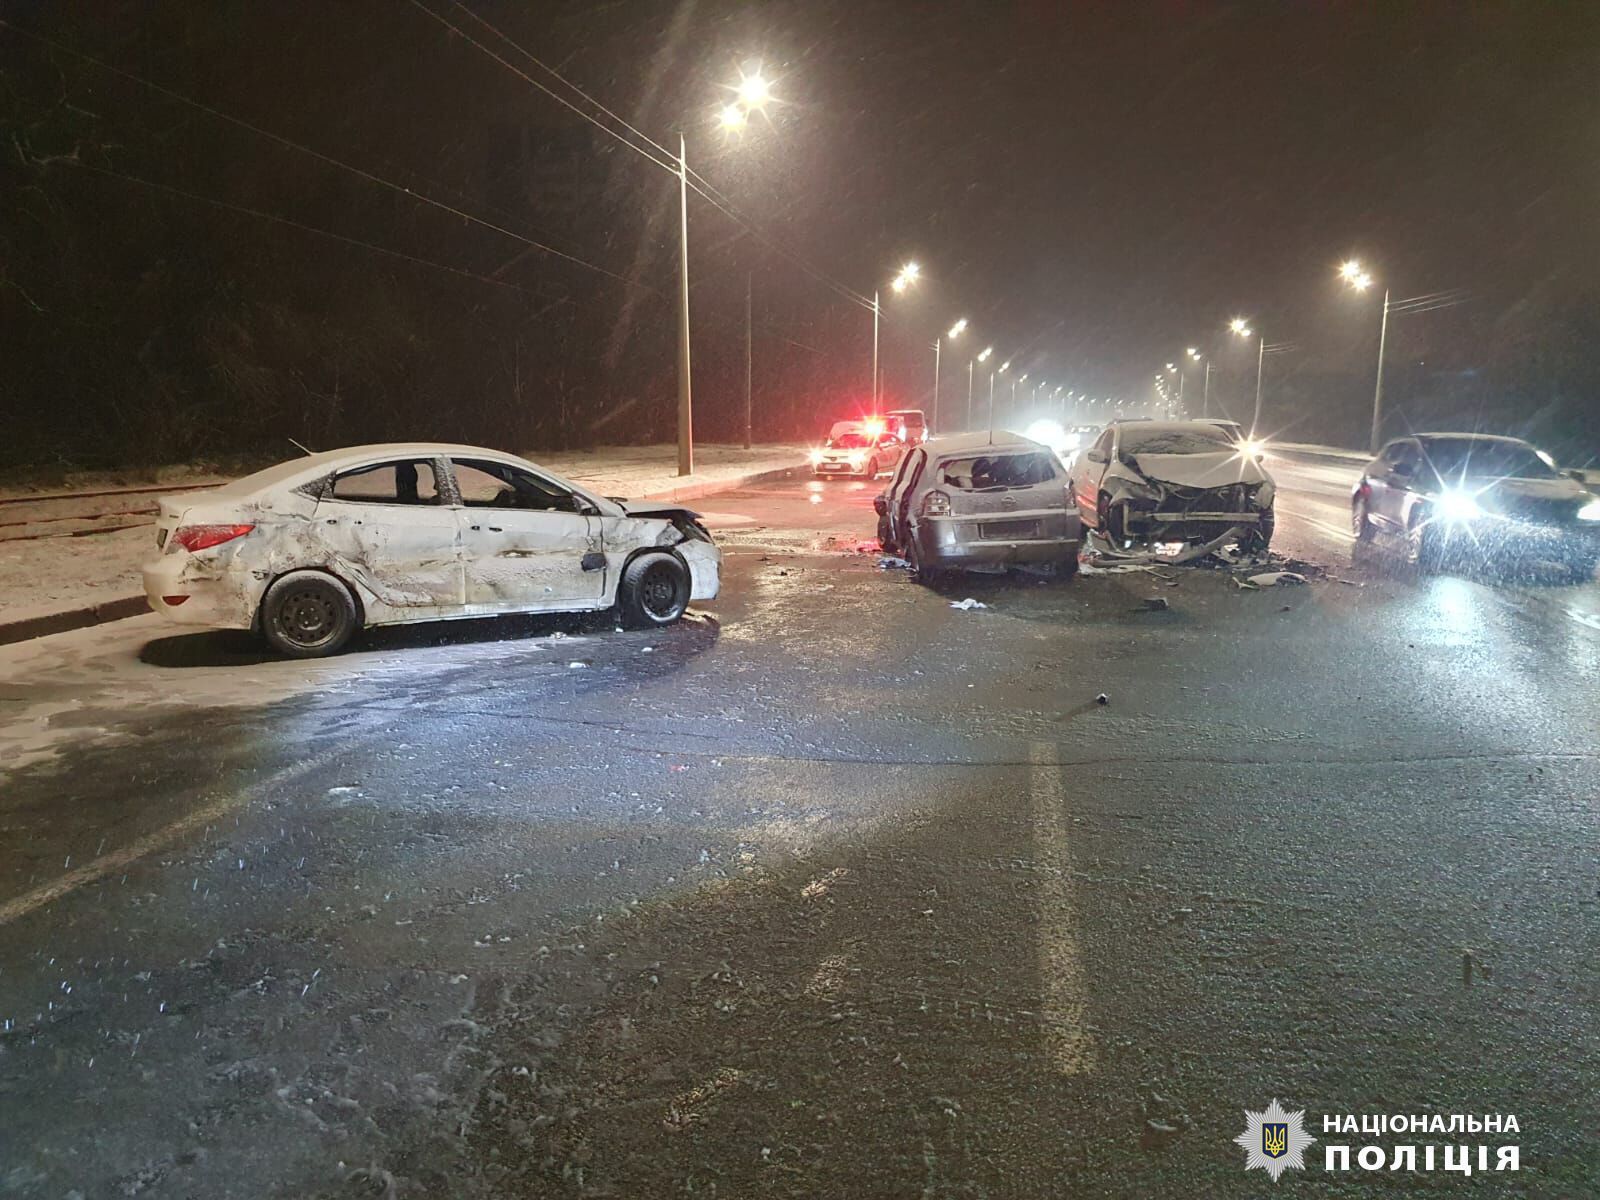 Авто вылетело на встречку: в Харькове в ДТП погиб шестилетний мальчик, пять человек пострадали. Фото